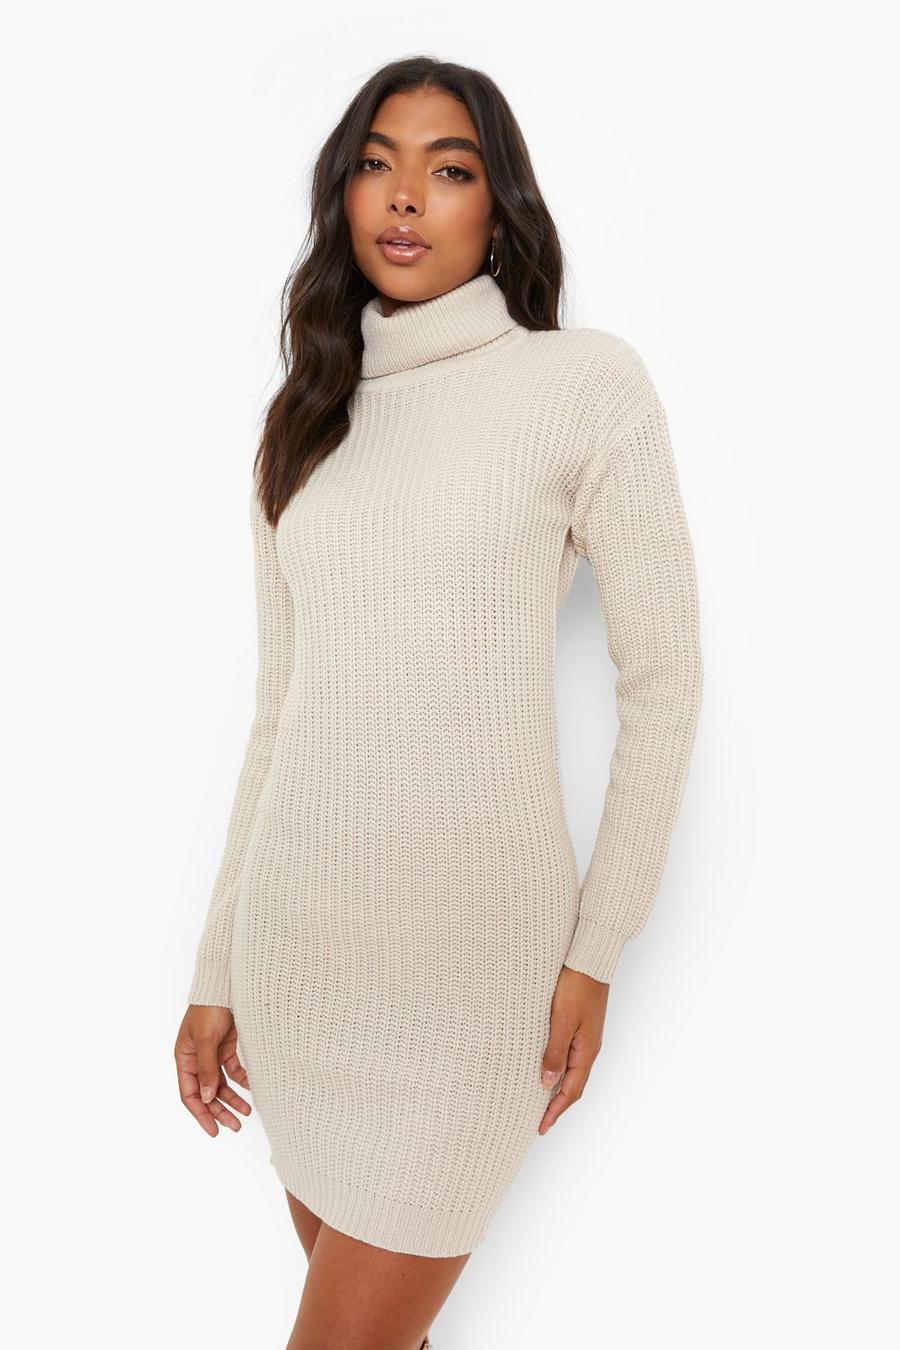 פלדה שמלת סוודר מבד ממוחזר עם צווארון נגלל, לנשים גבוהות